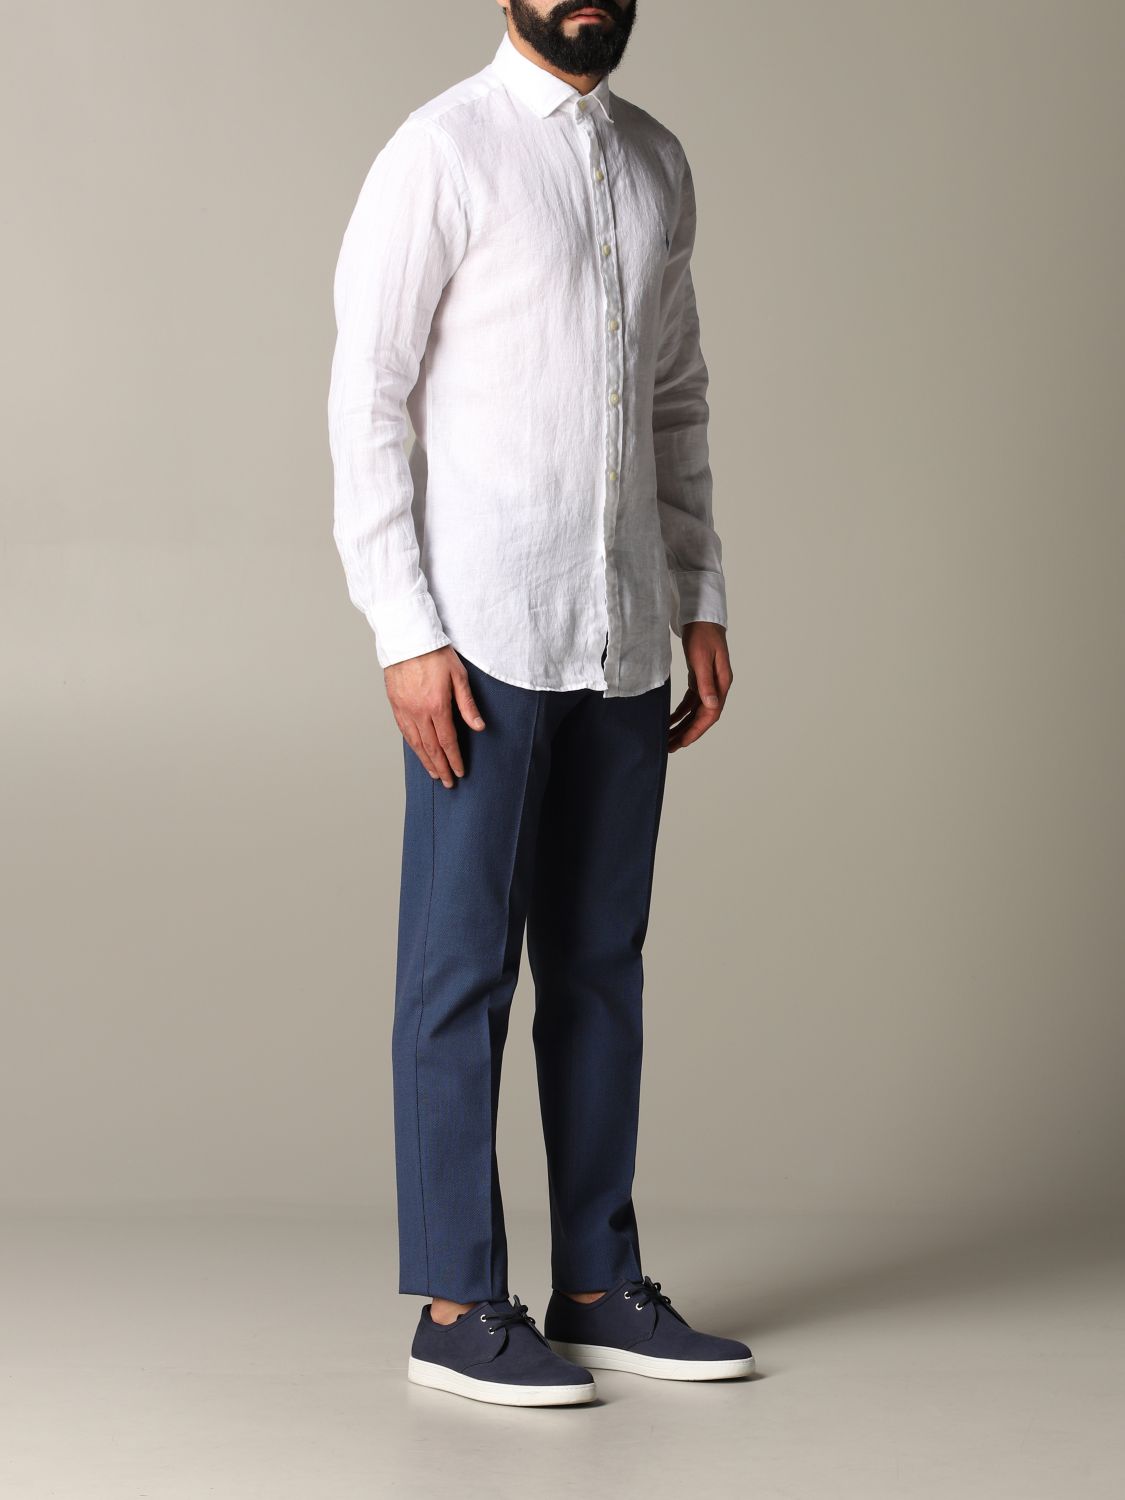 Camisa Polo Ralph Lauren: Camisa Polo Ralph Lauren para hombre blanco 2